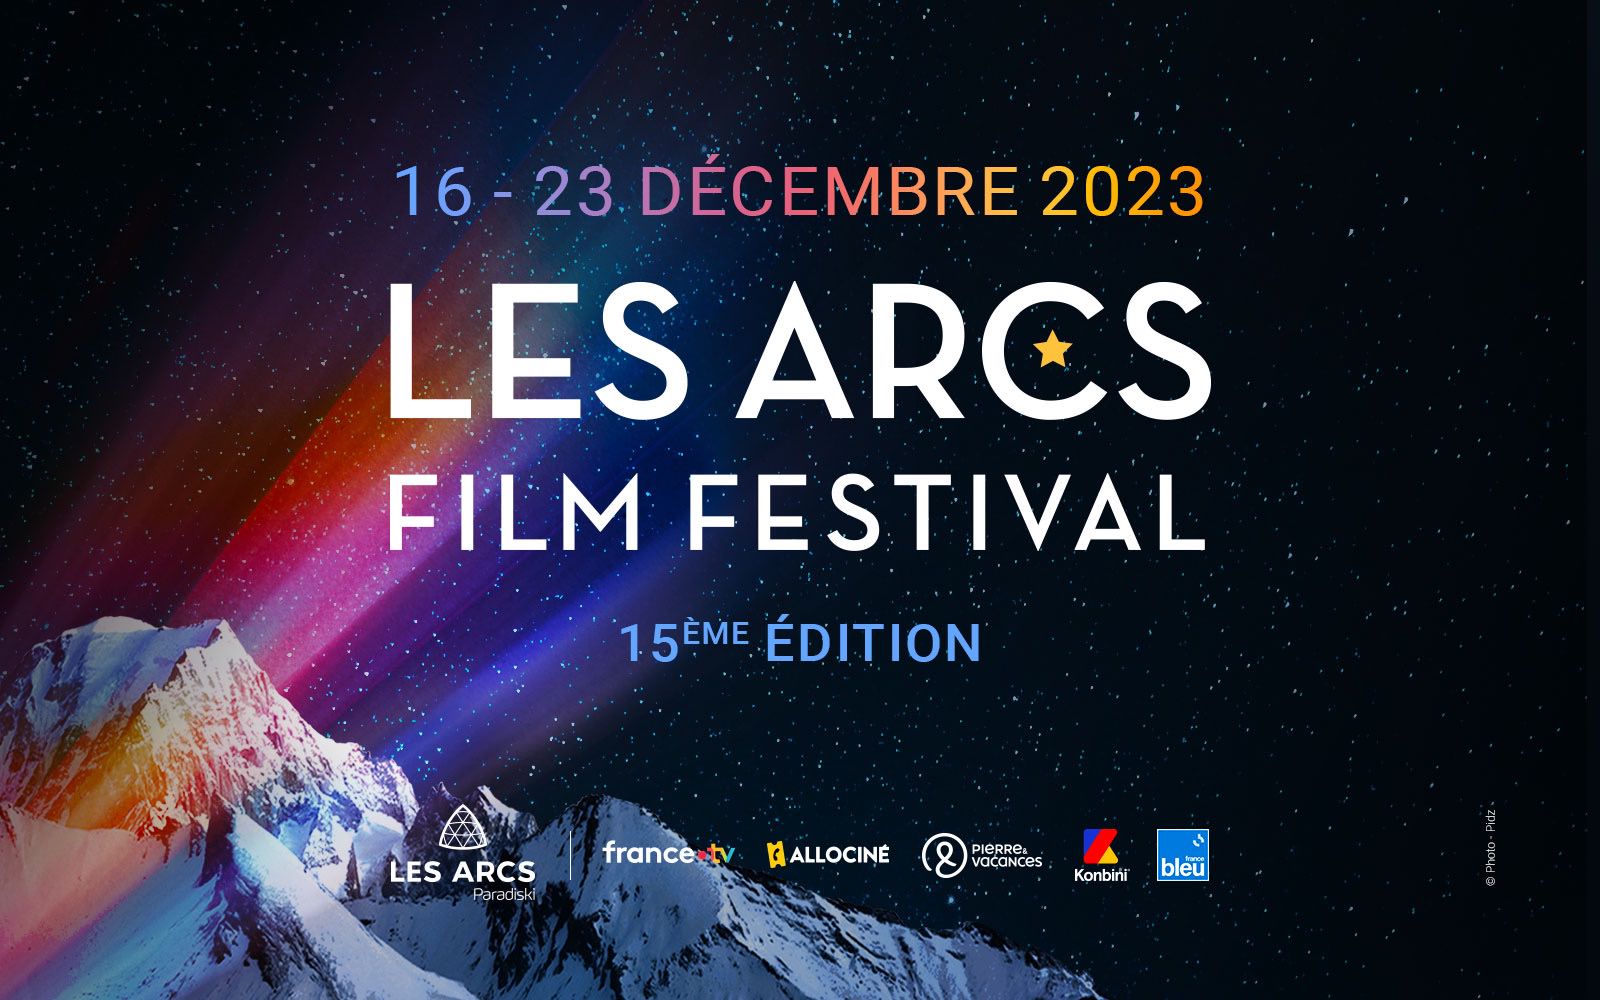 (c) Lesarcs-filmfest.com